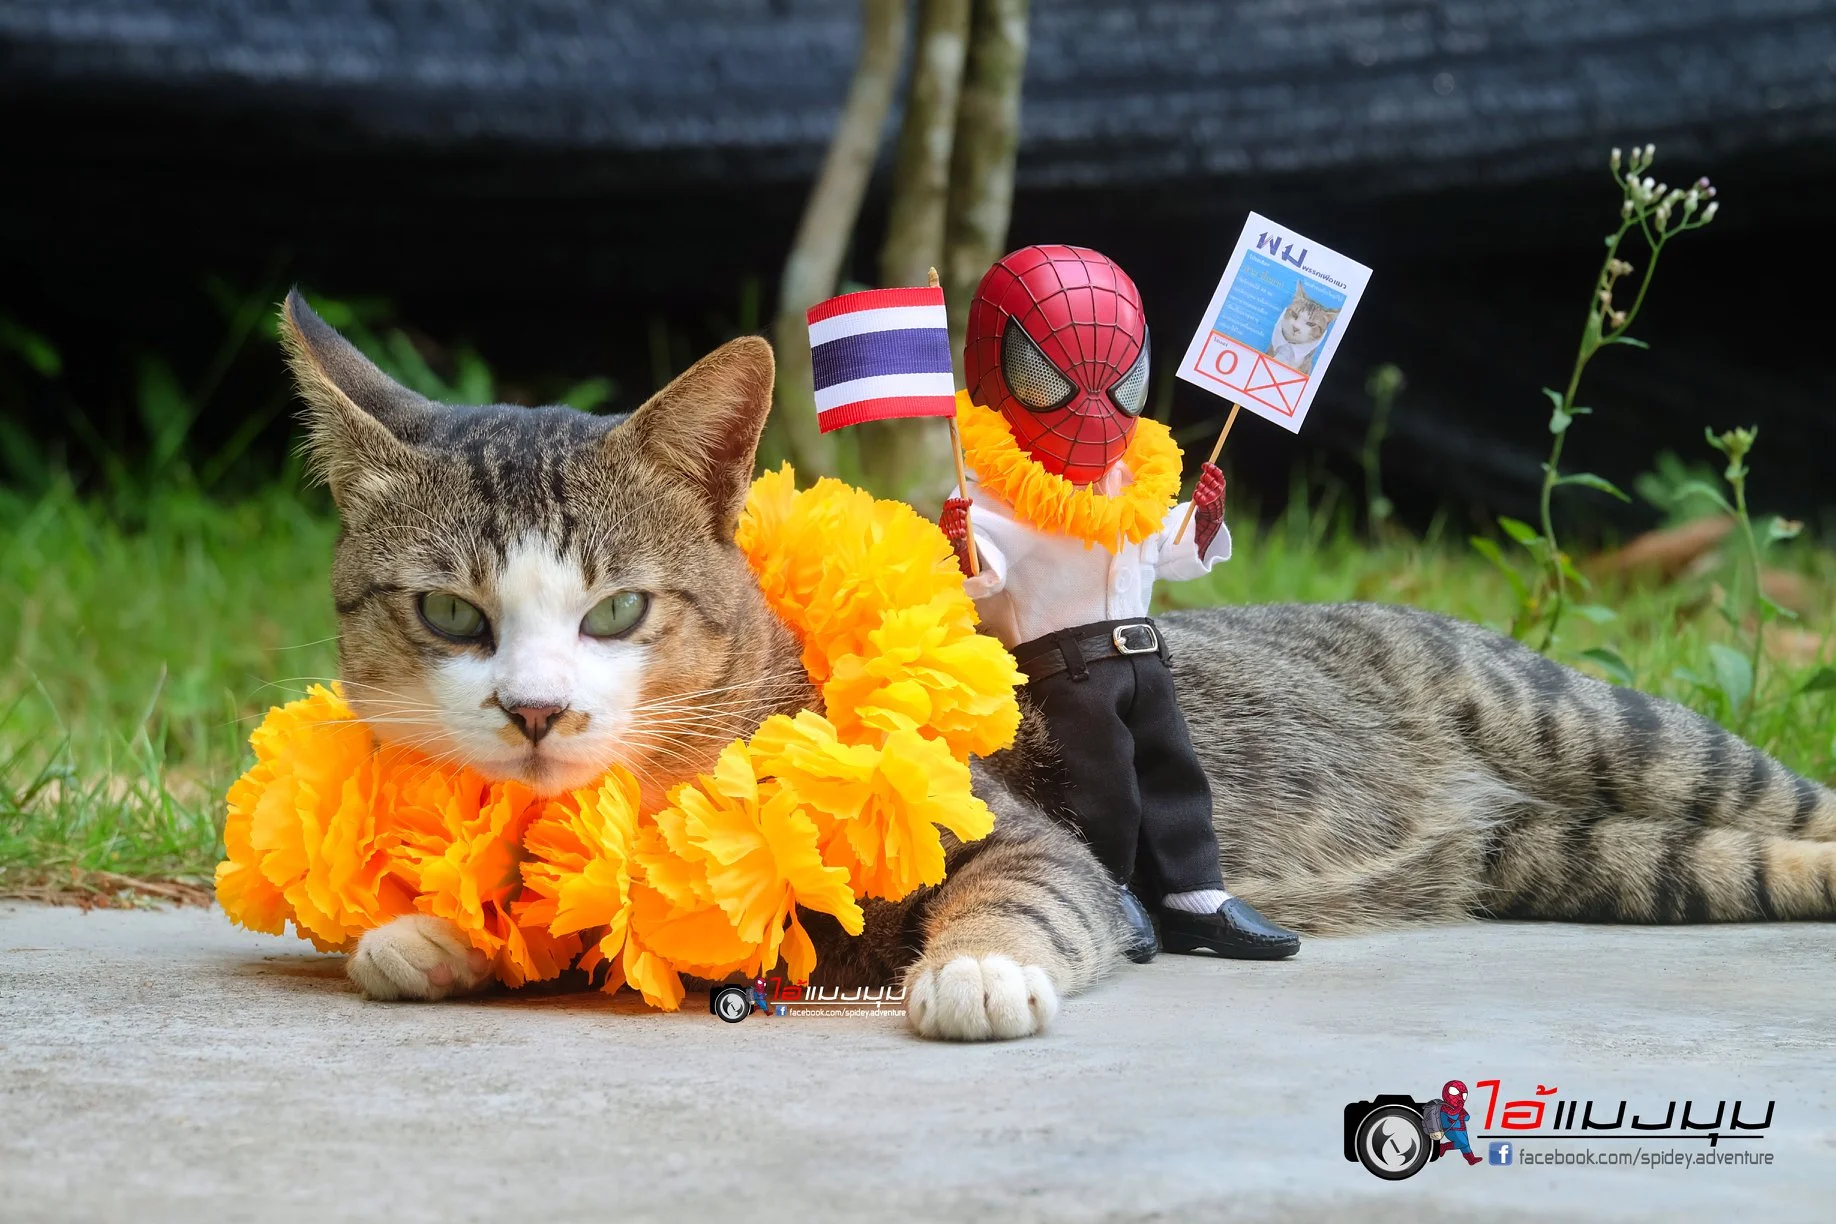 Художник додав до фото з котиками зображення Людини-павука – це виглядає дуже смішно - фото 459360